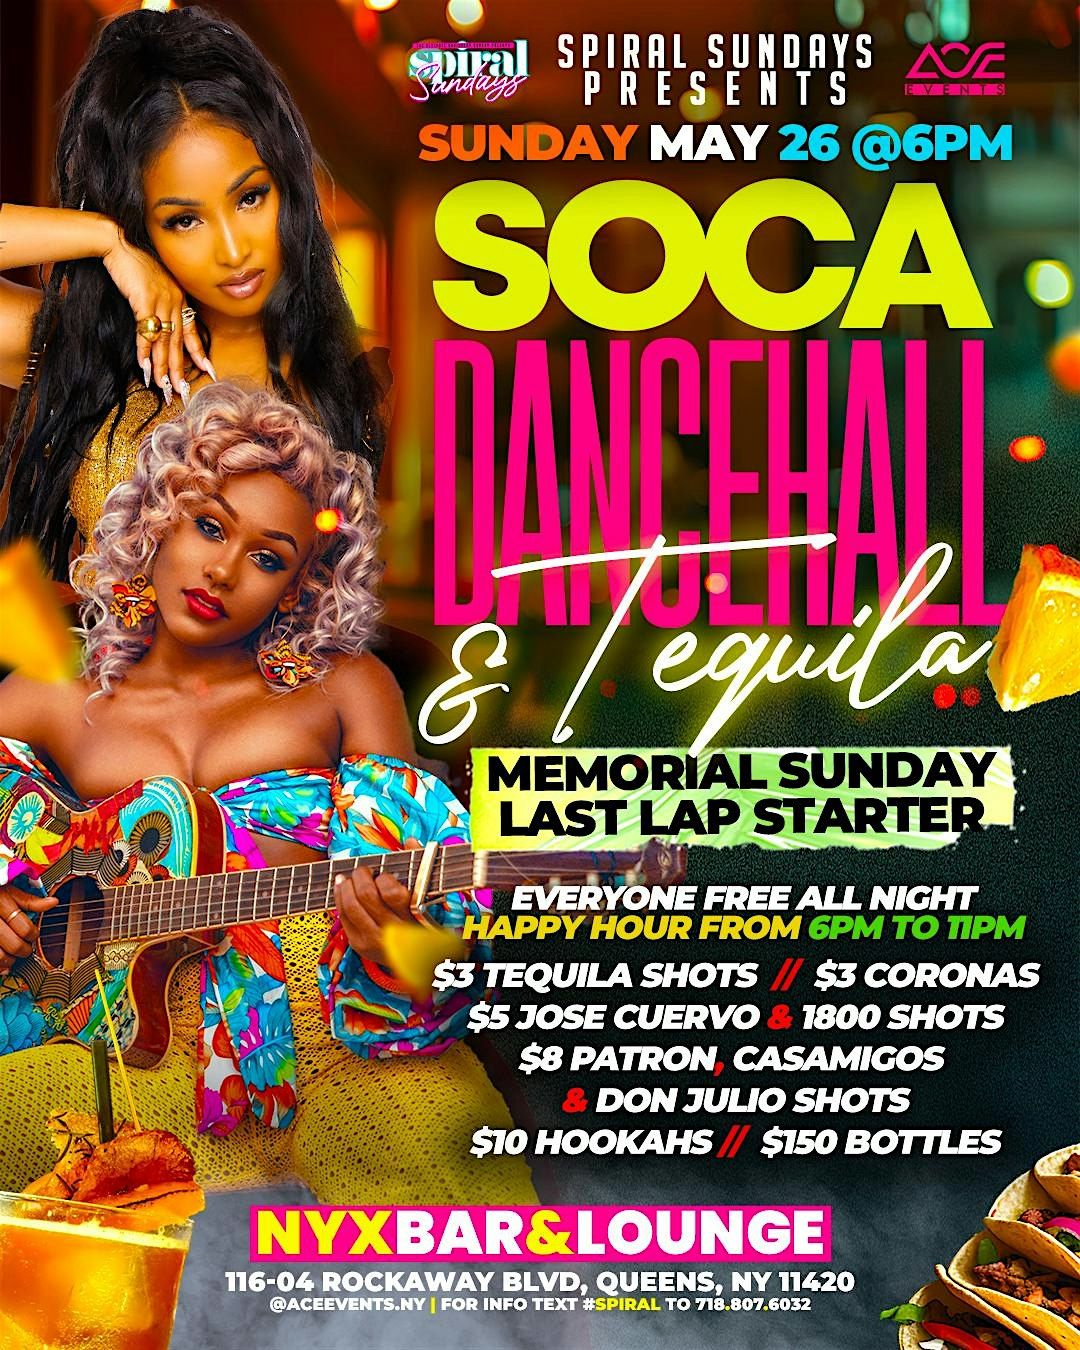 Soca, Dancehall & Tequila - Memorial Sunday Starter